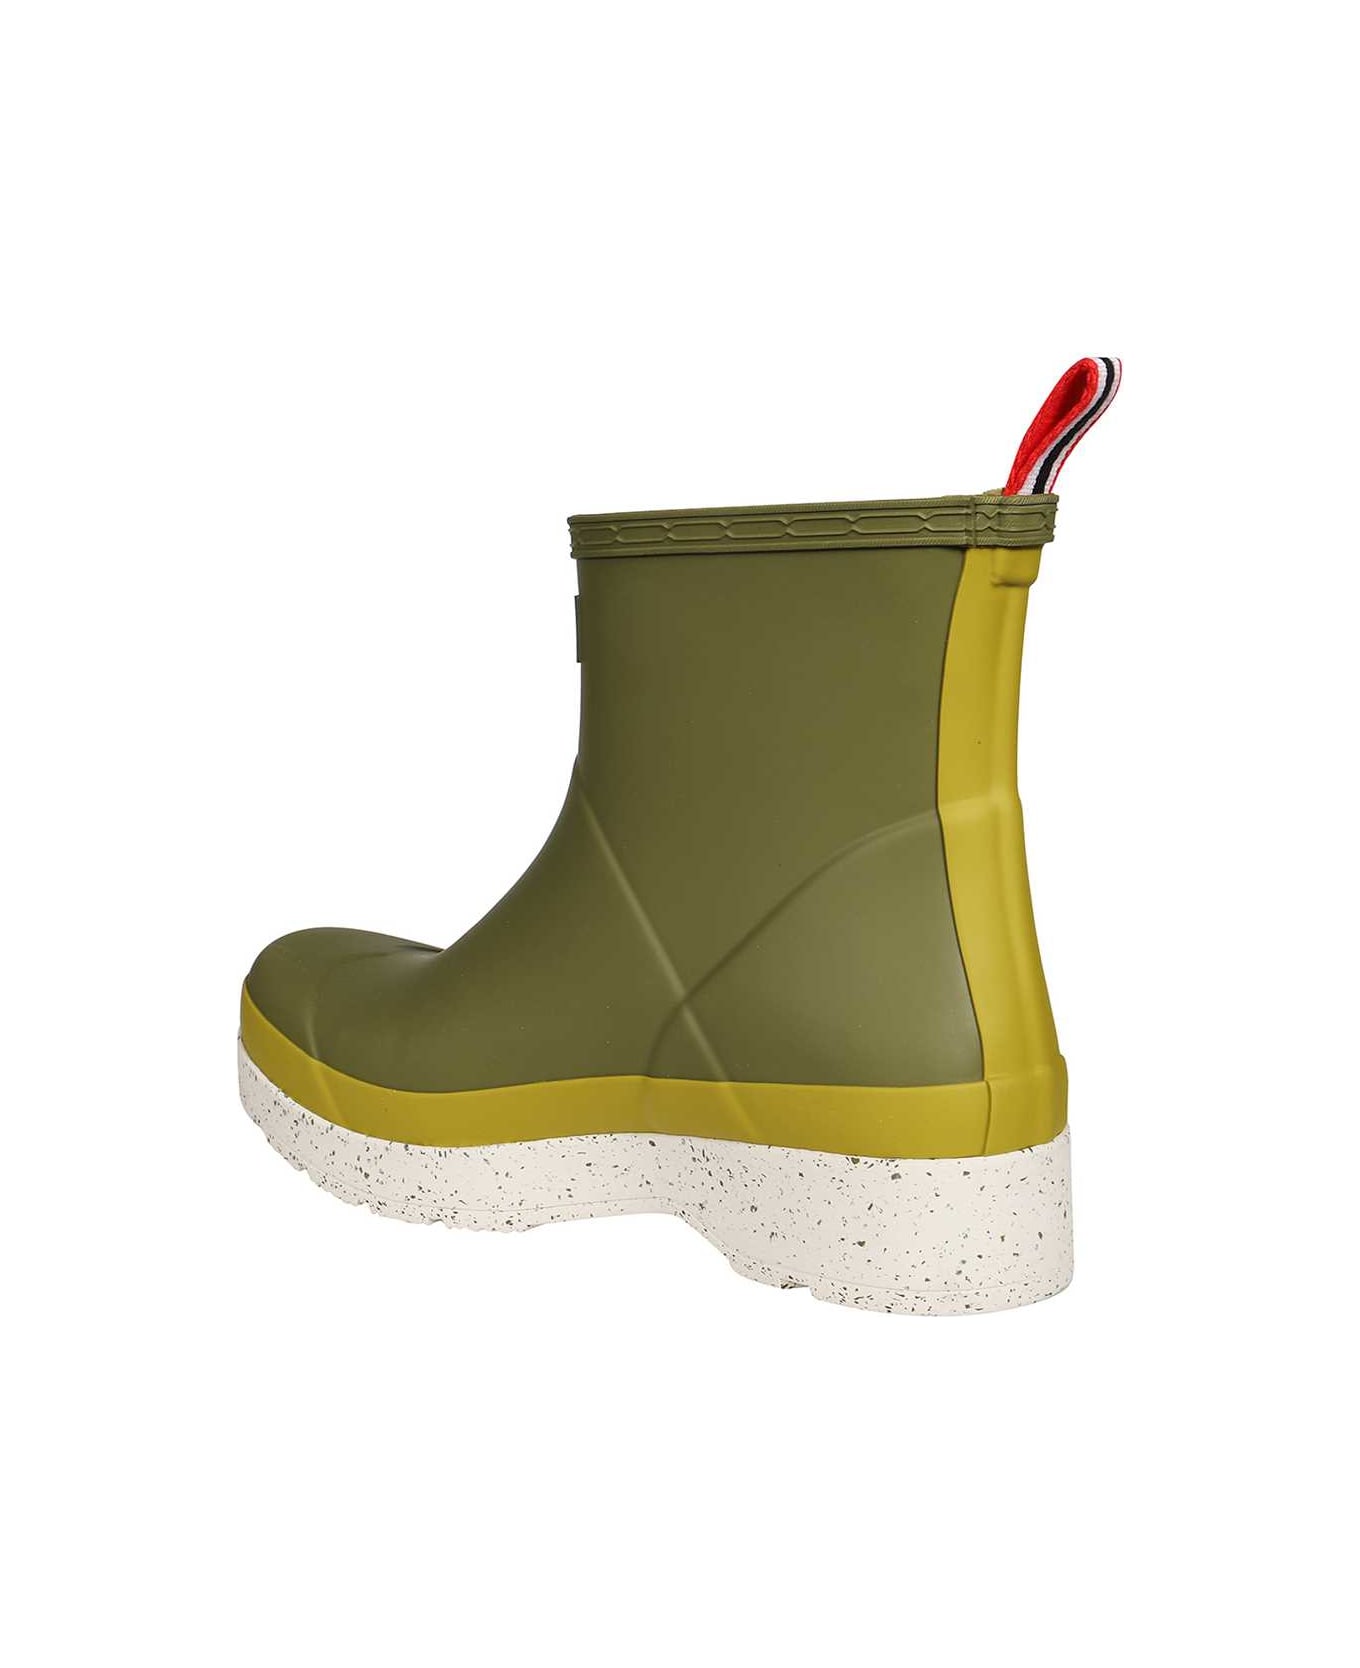 Hunter Rubber Boots - green